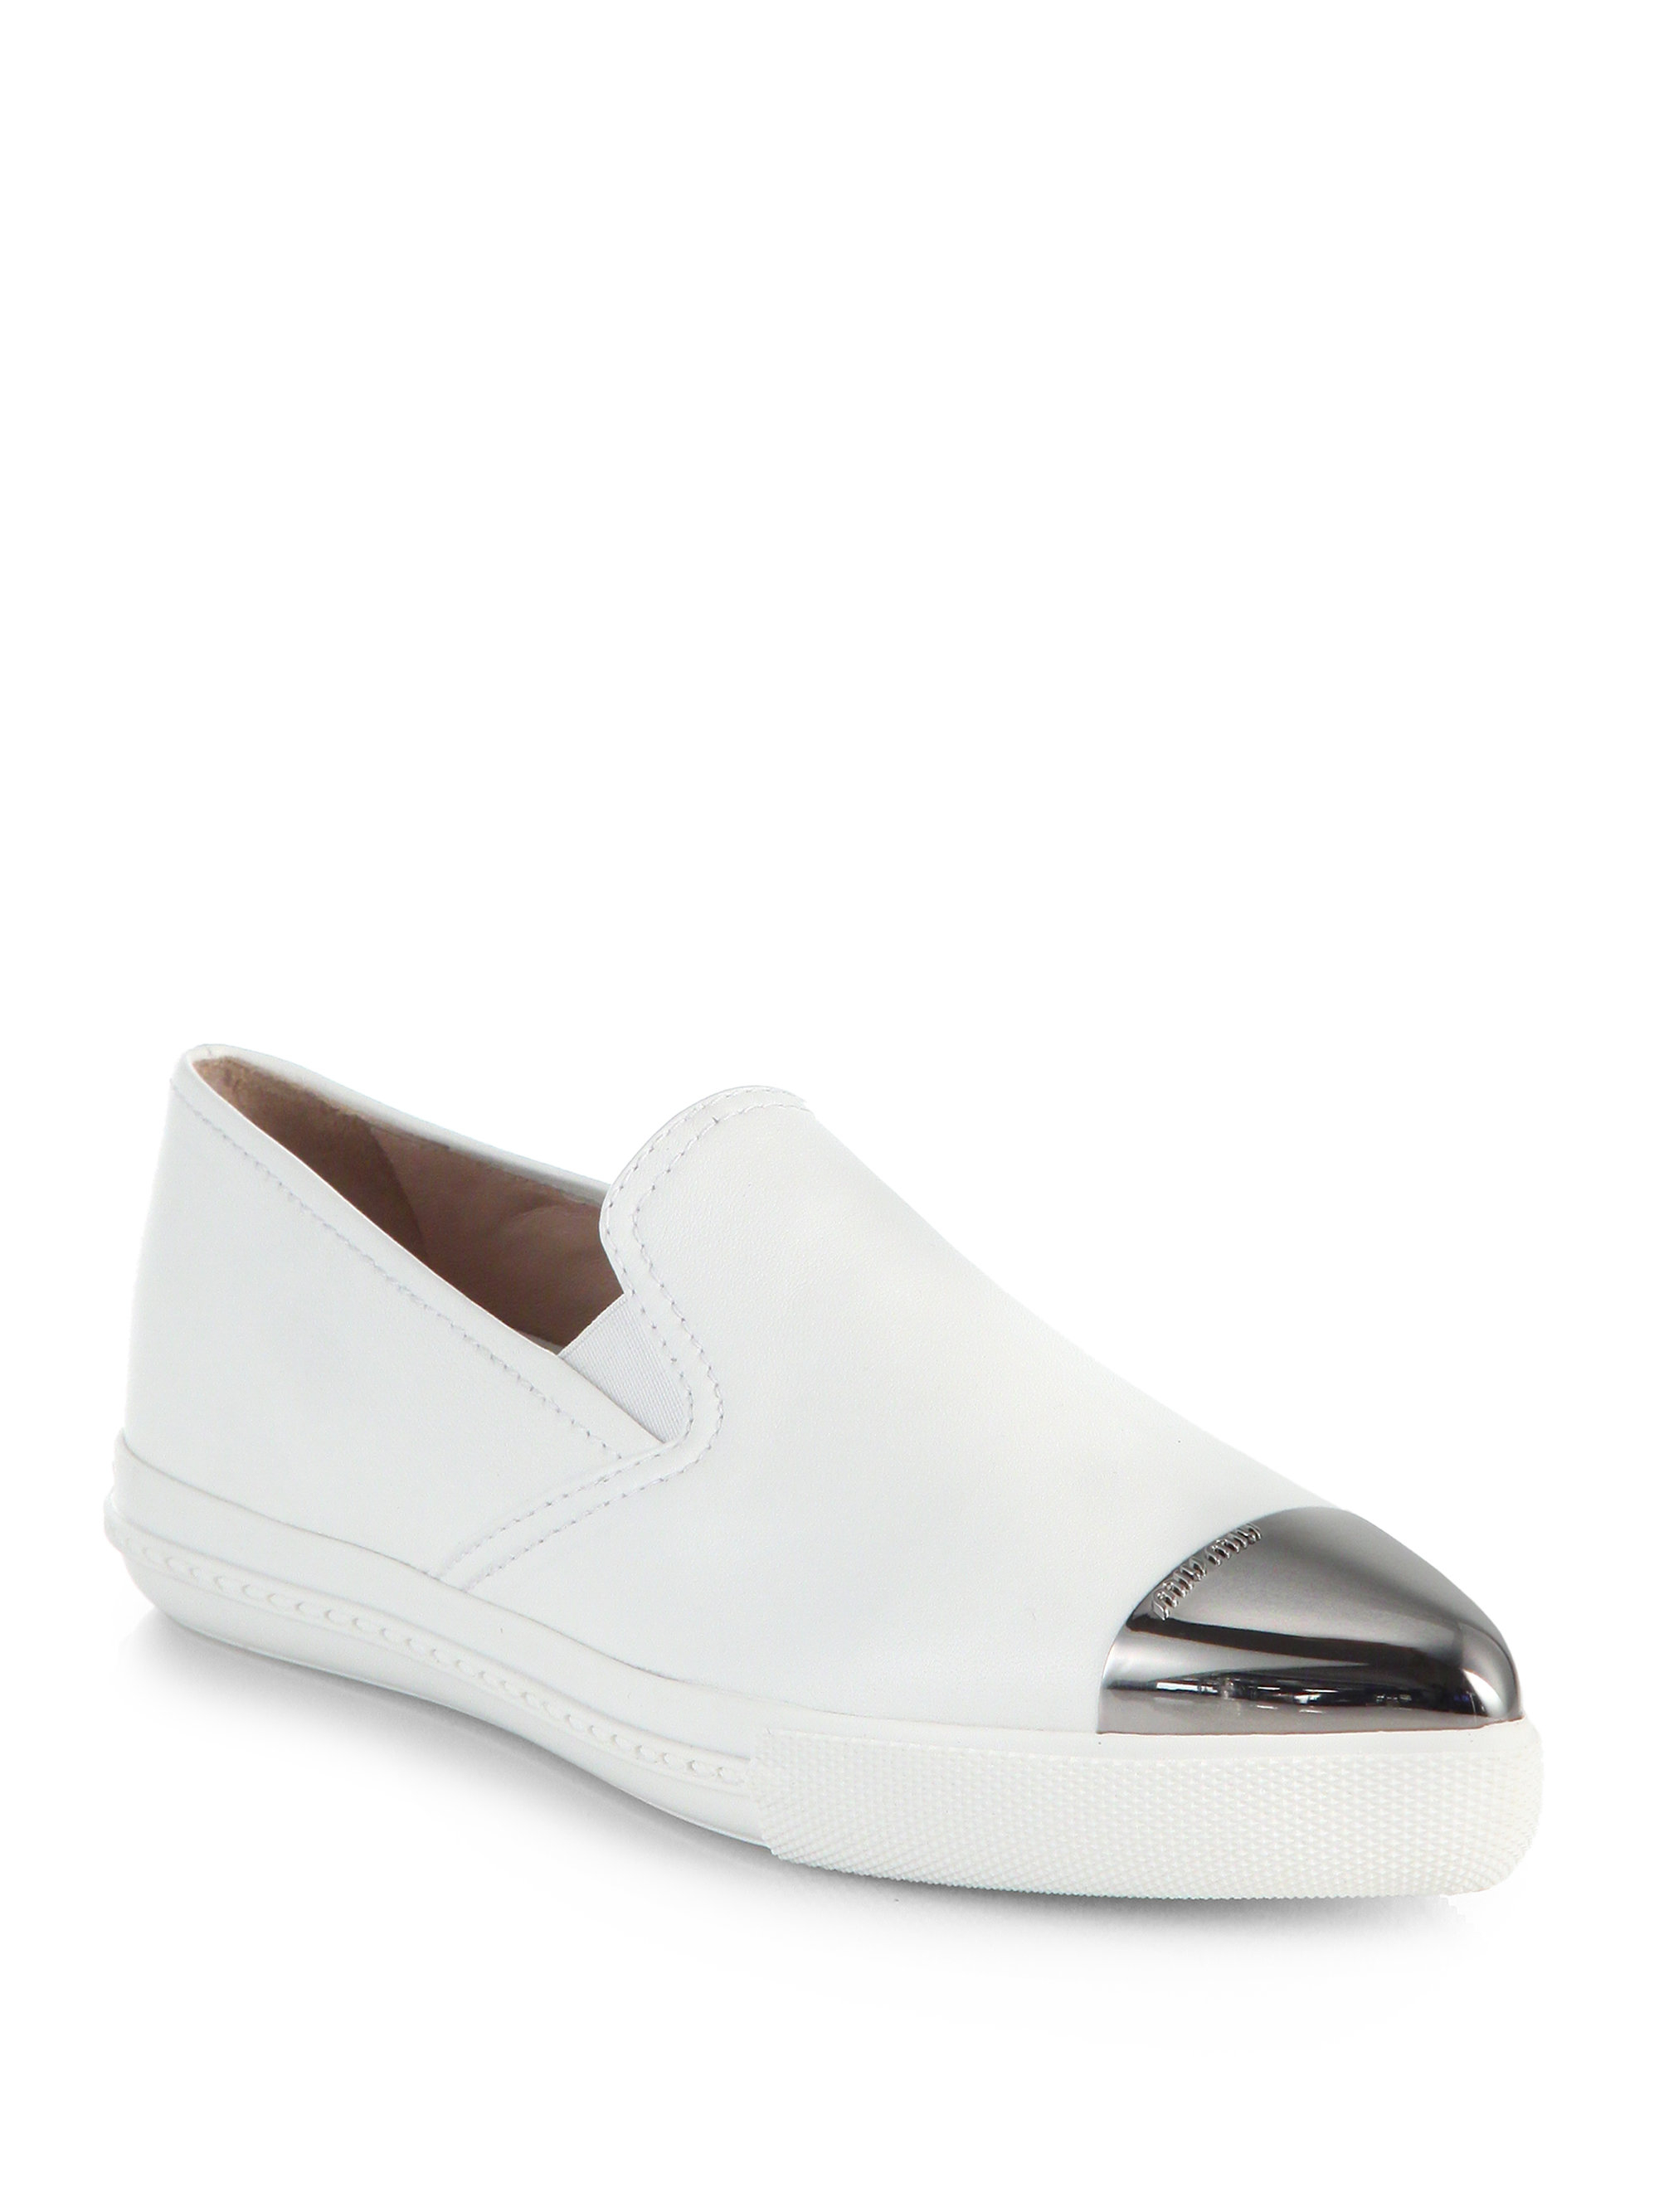 Miu Miu Leather Cap-Toe Skate Shoes in White | Lyst